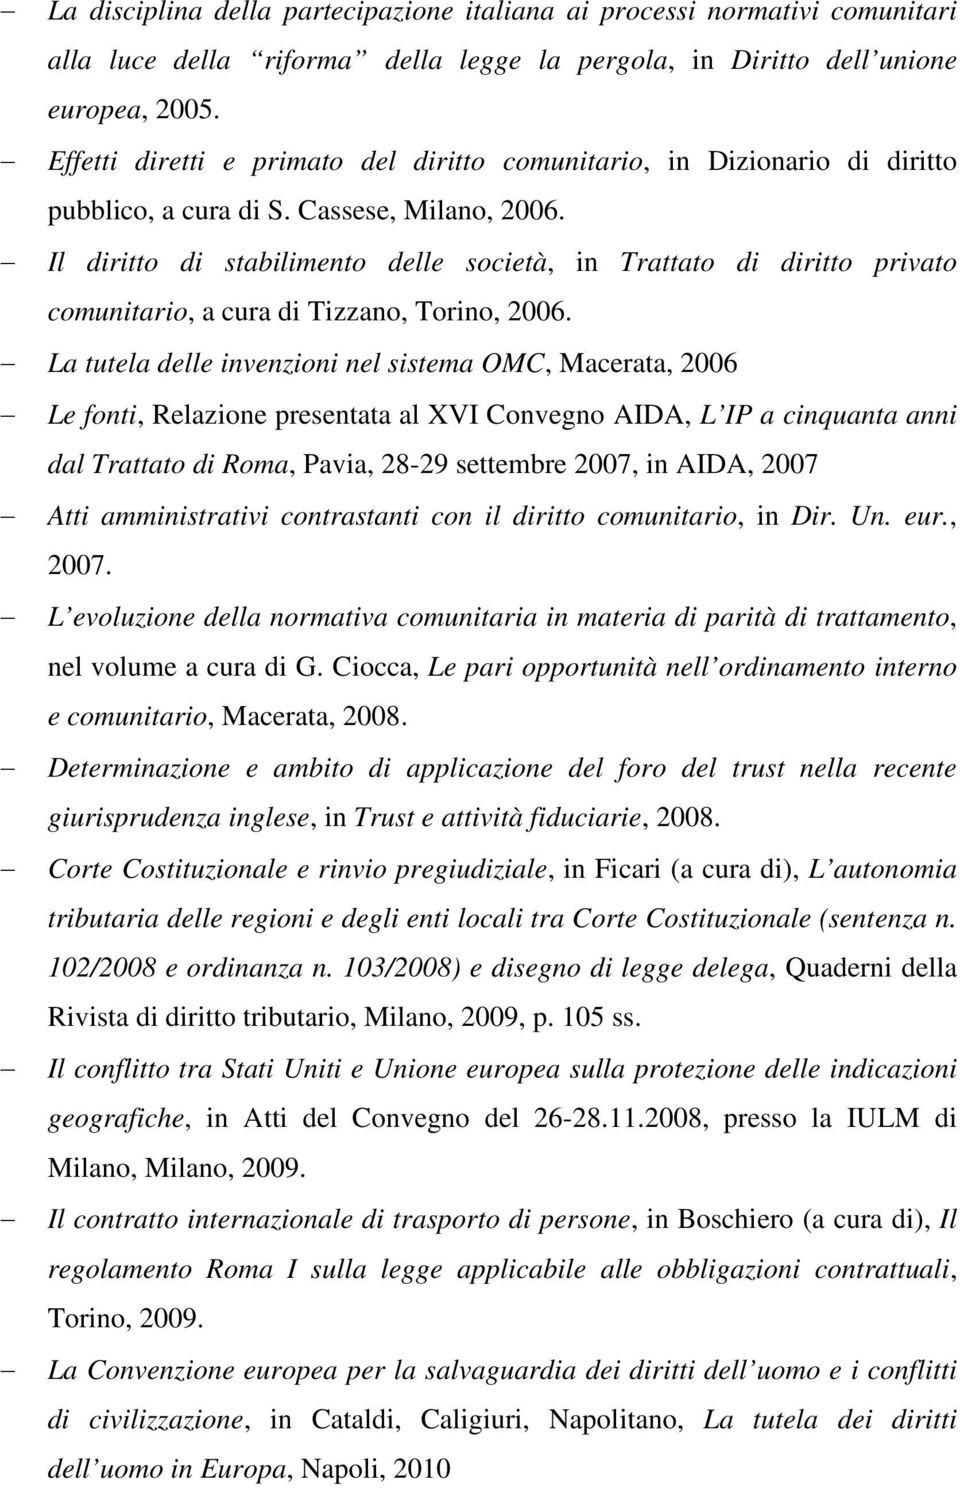 Il diritto di stabilimento delle società, in Trattato di diritto privato comunitario, a cura di Tizzano, Torino, 2006.